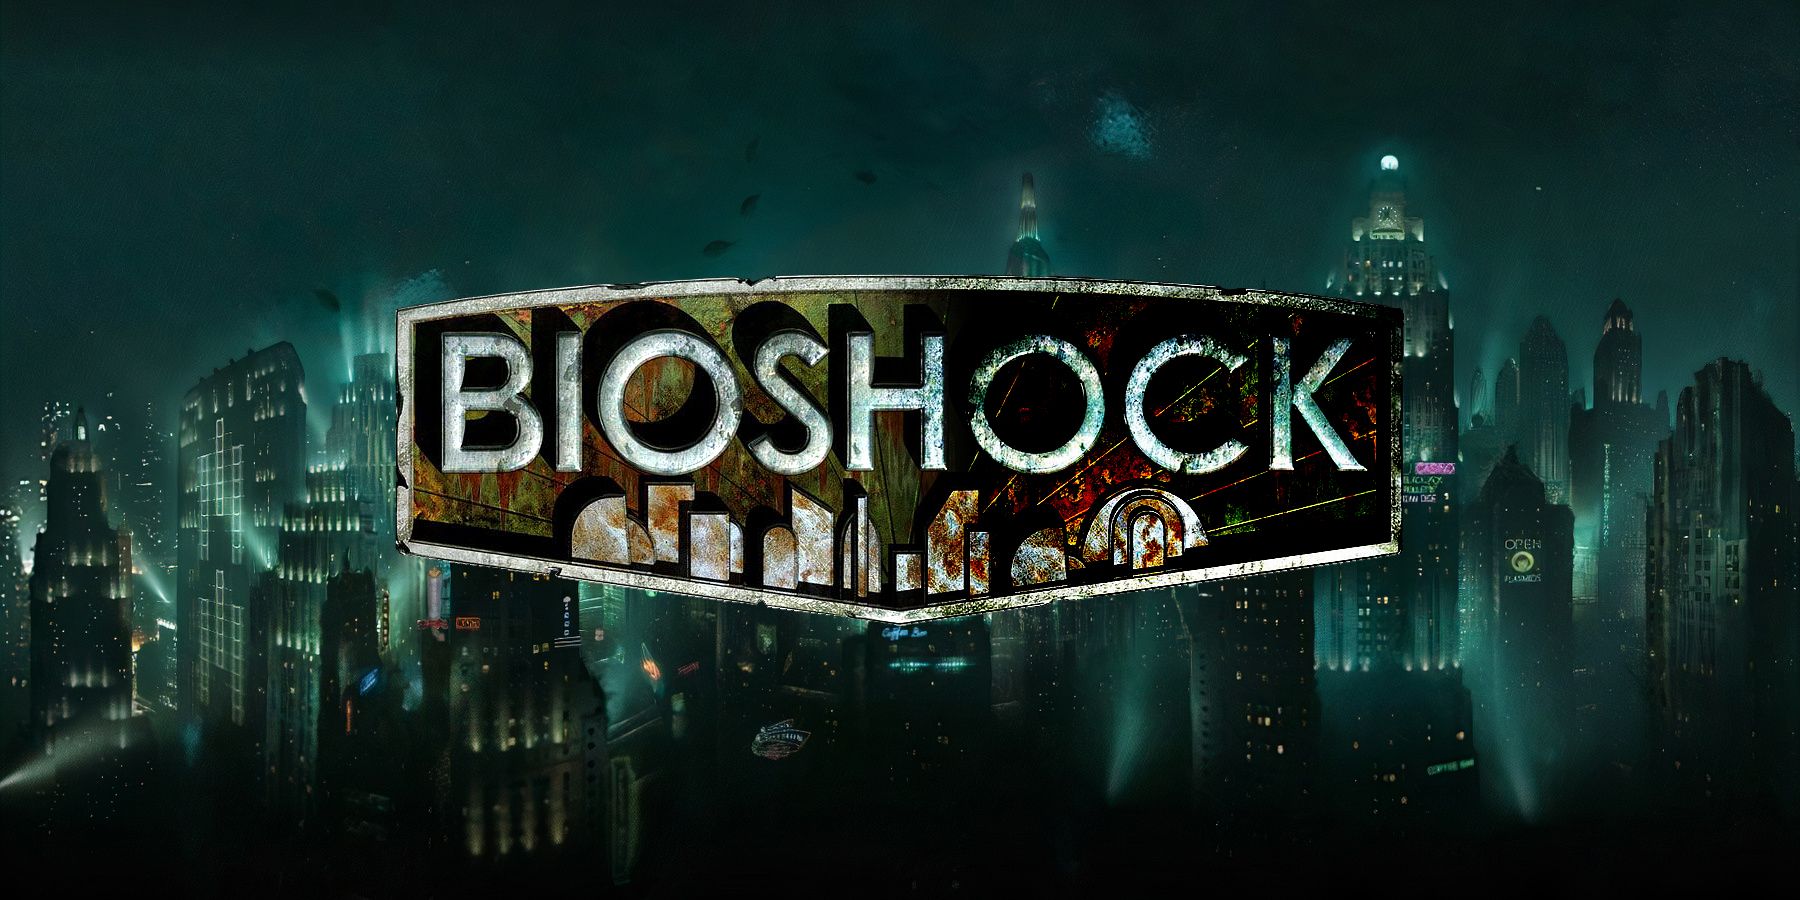 Deteriorating BioShock logo over Rapture background